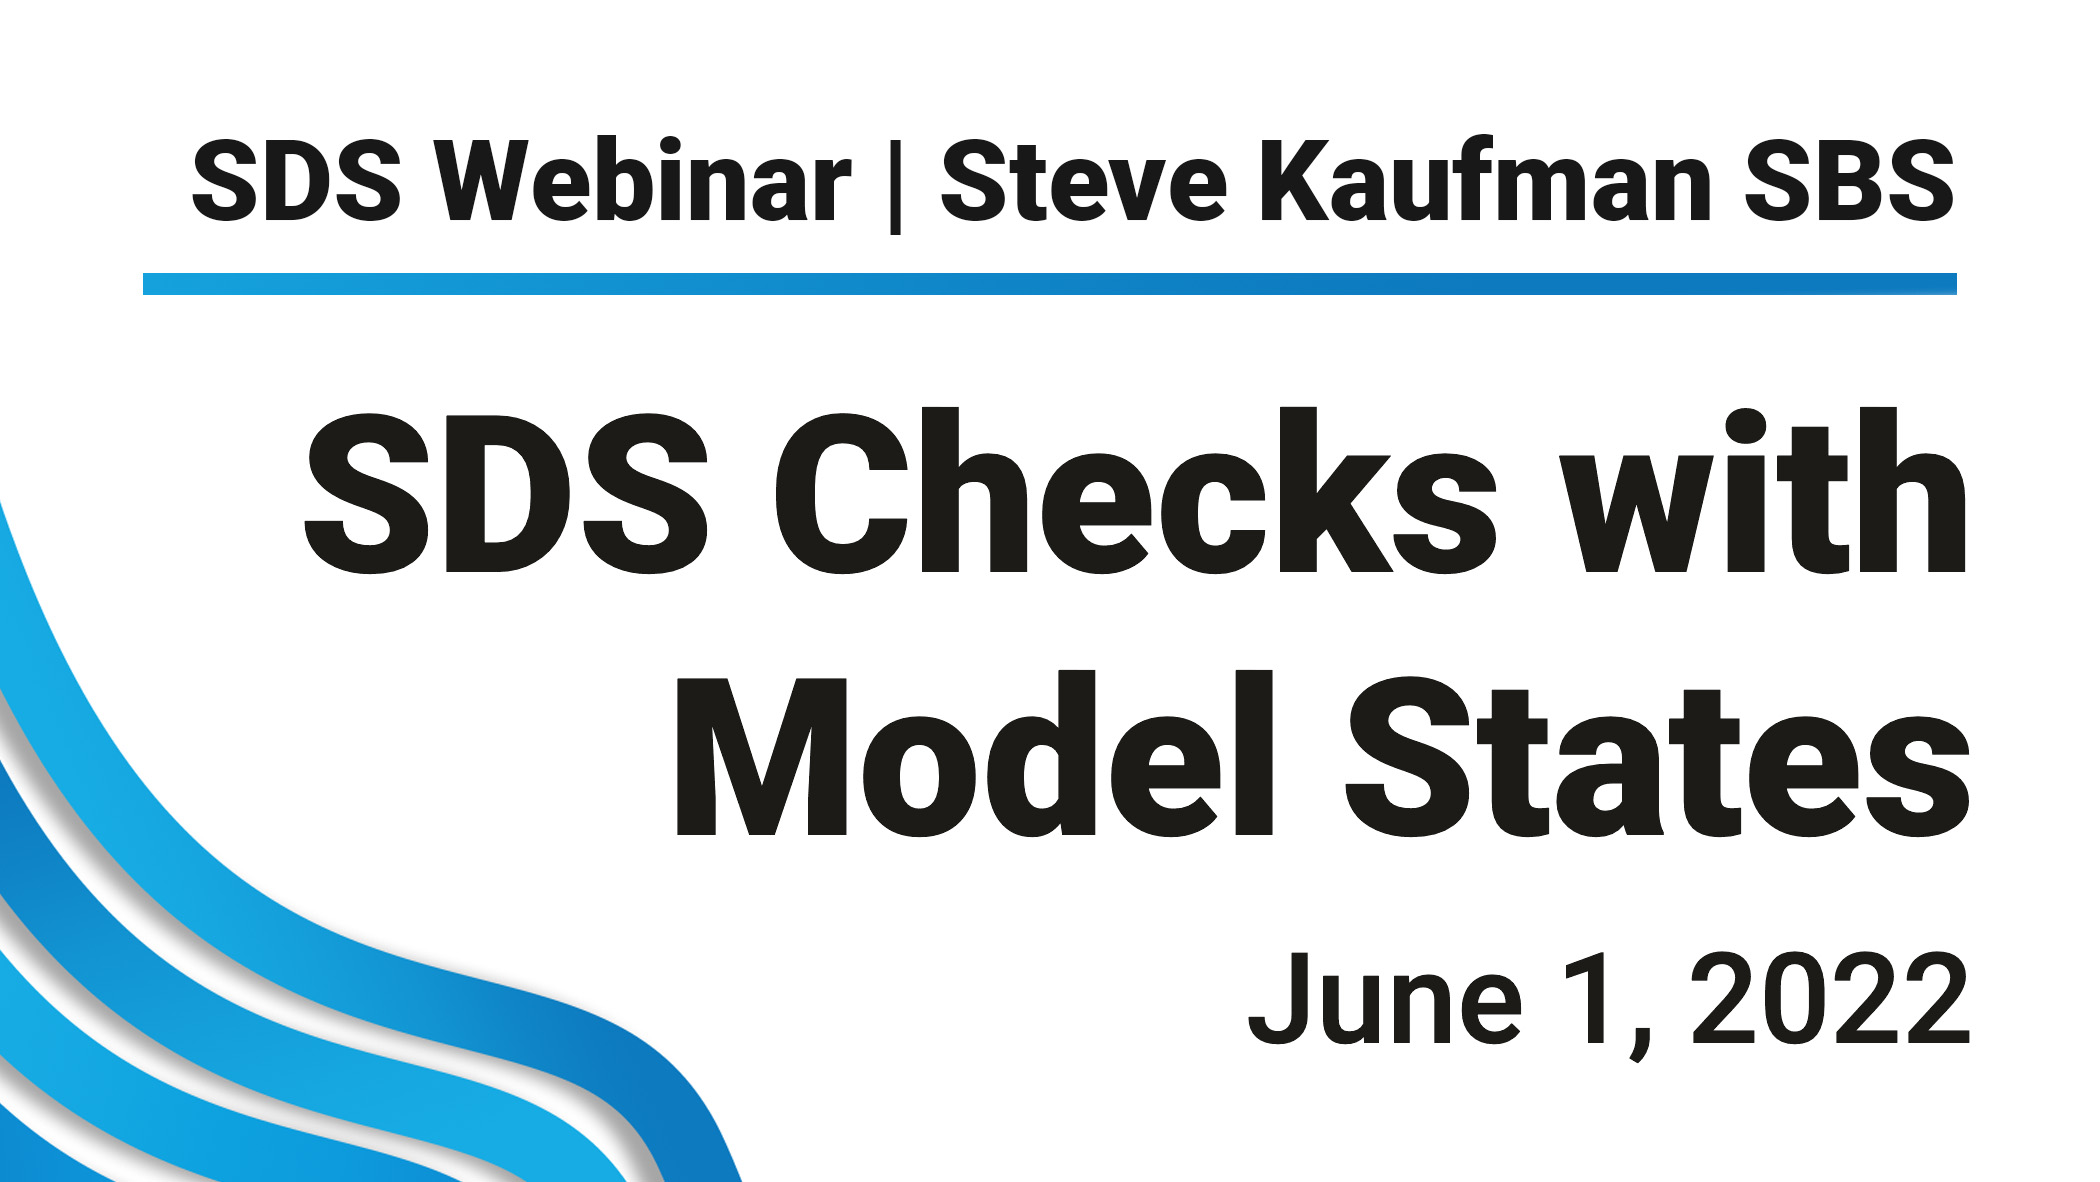 SDS Webinar with Steve Kaufman